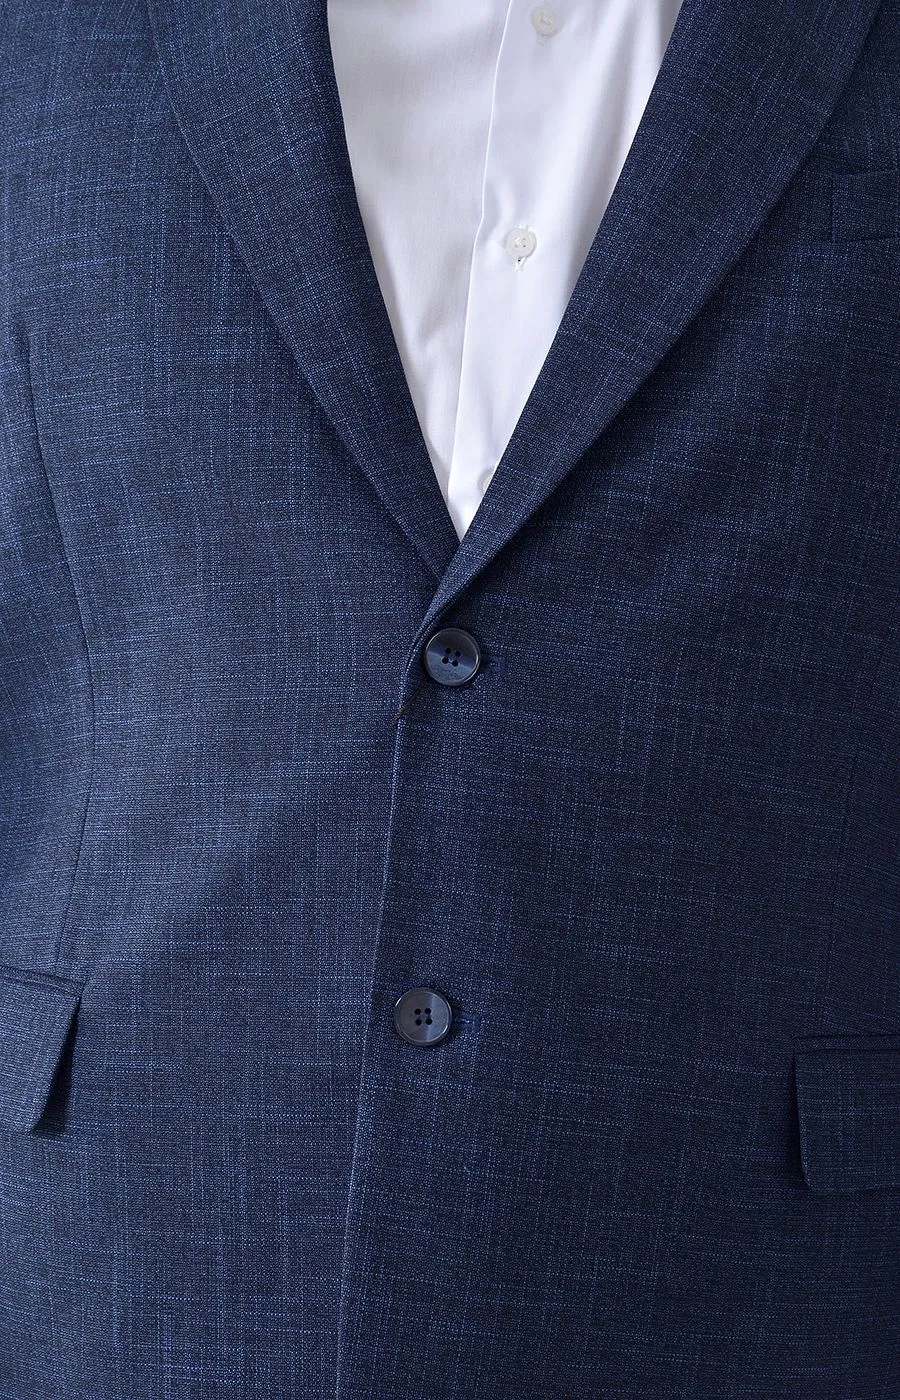 Пиджак тёмно-синий с синим штрихом большого размера